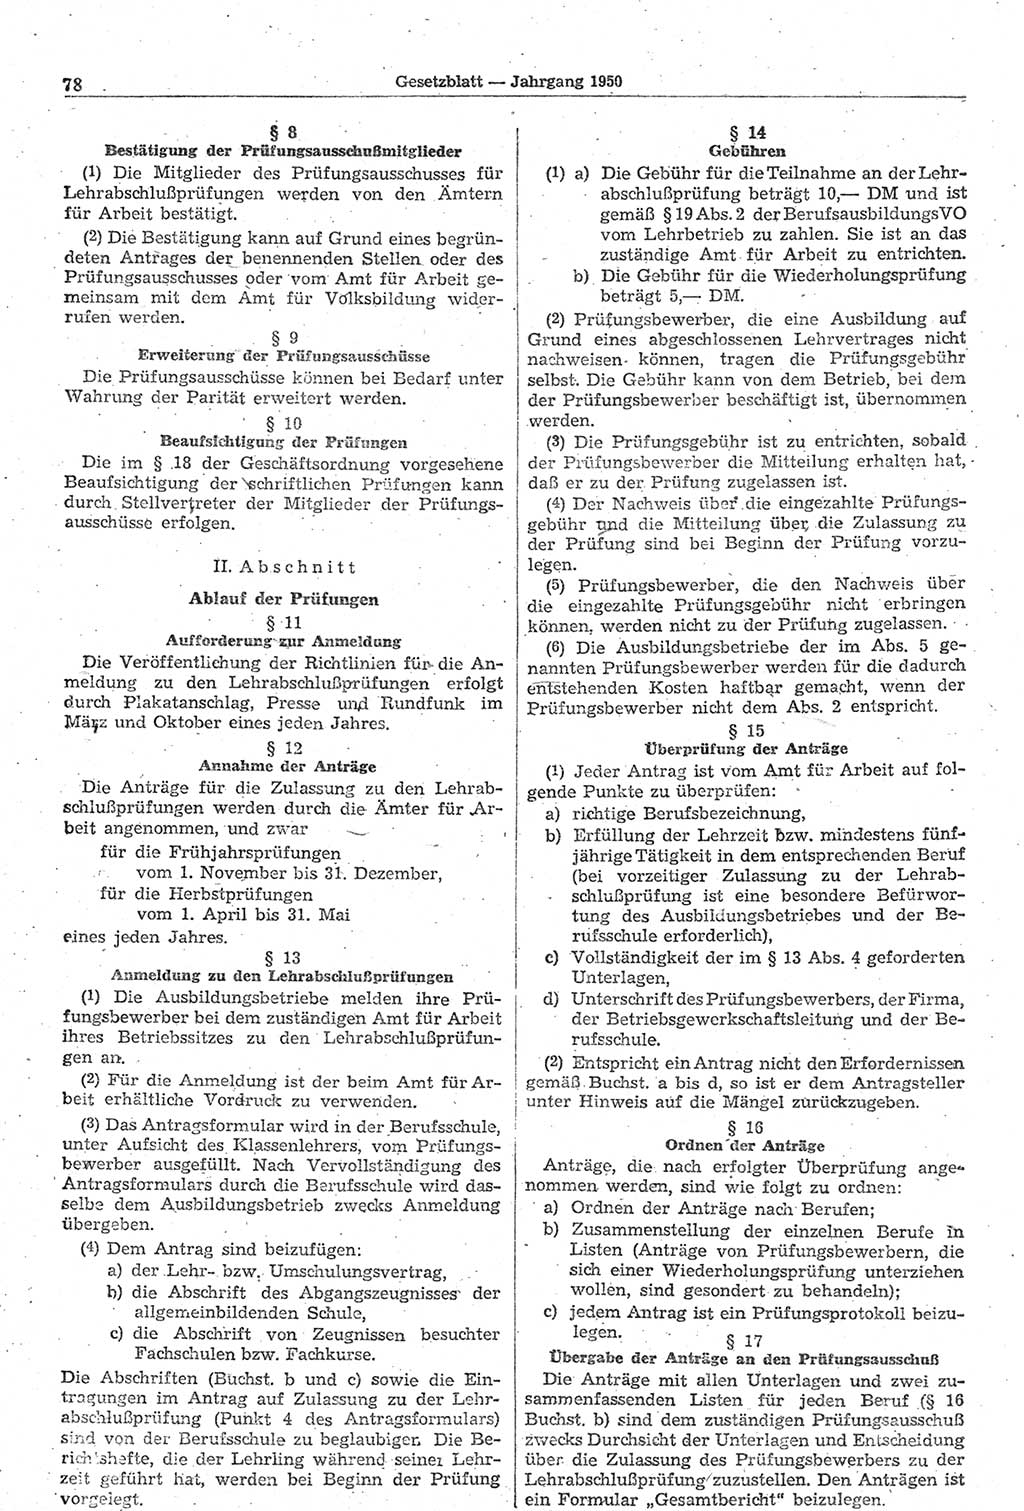 Gesetzblatt (GBl.) der Deutschen Demokratischen Republik (DDR) 1950, Seite 78 (GBl. DDR 1950, S. 78)